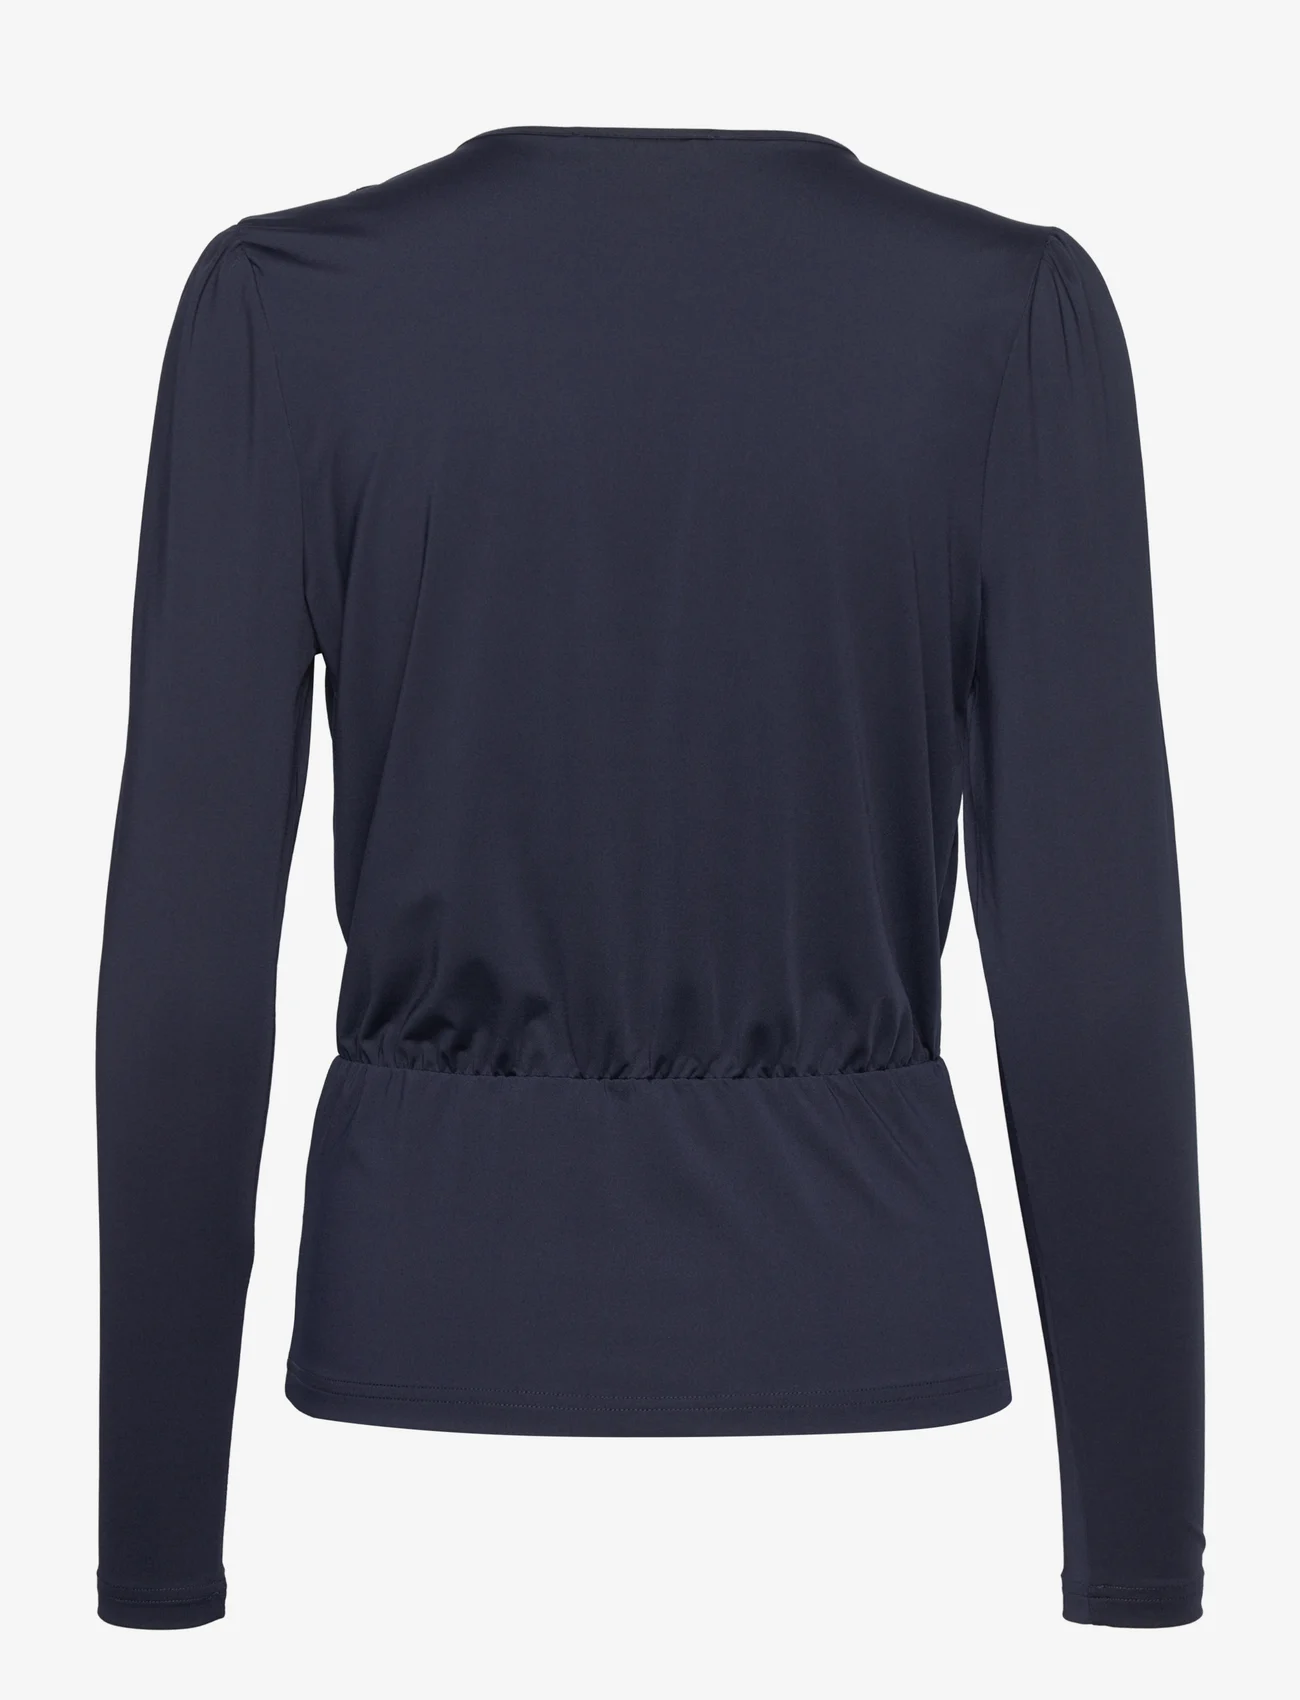 Rosemunde - T-Shirt - t-shirts met lange mouwen - dark blue - 1